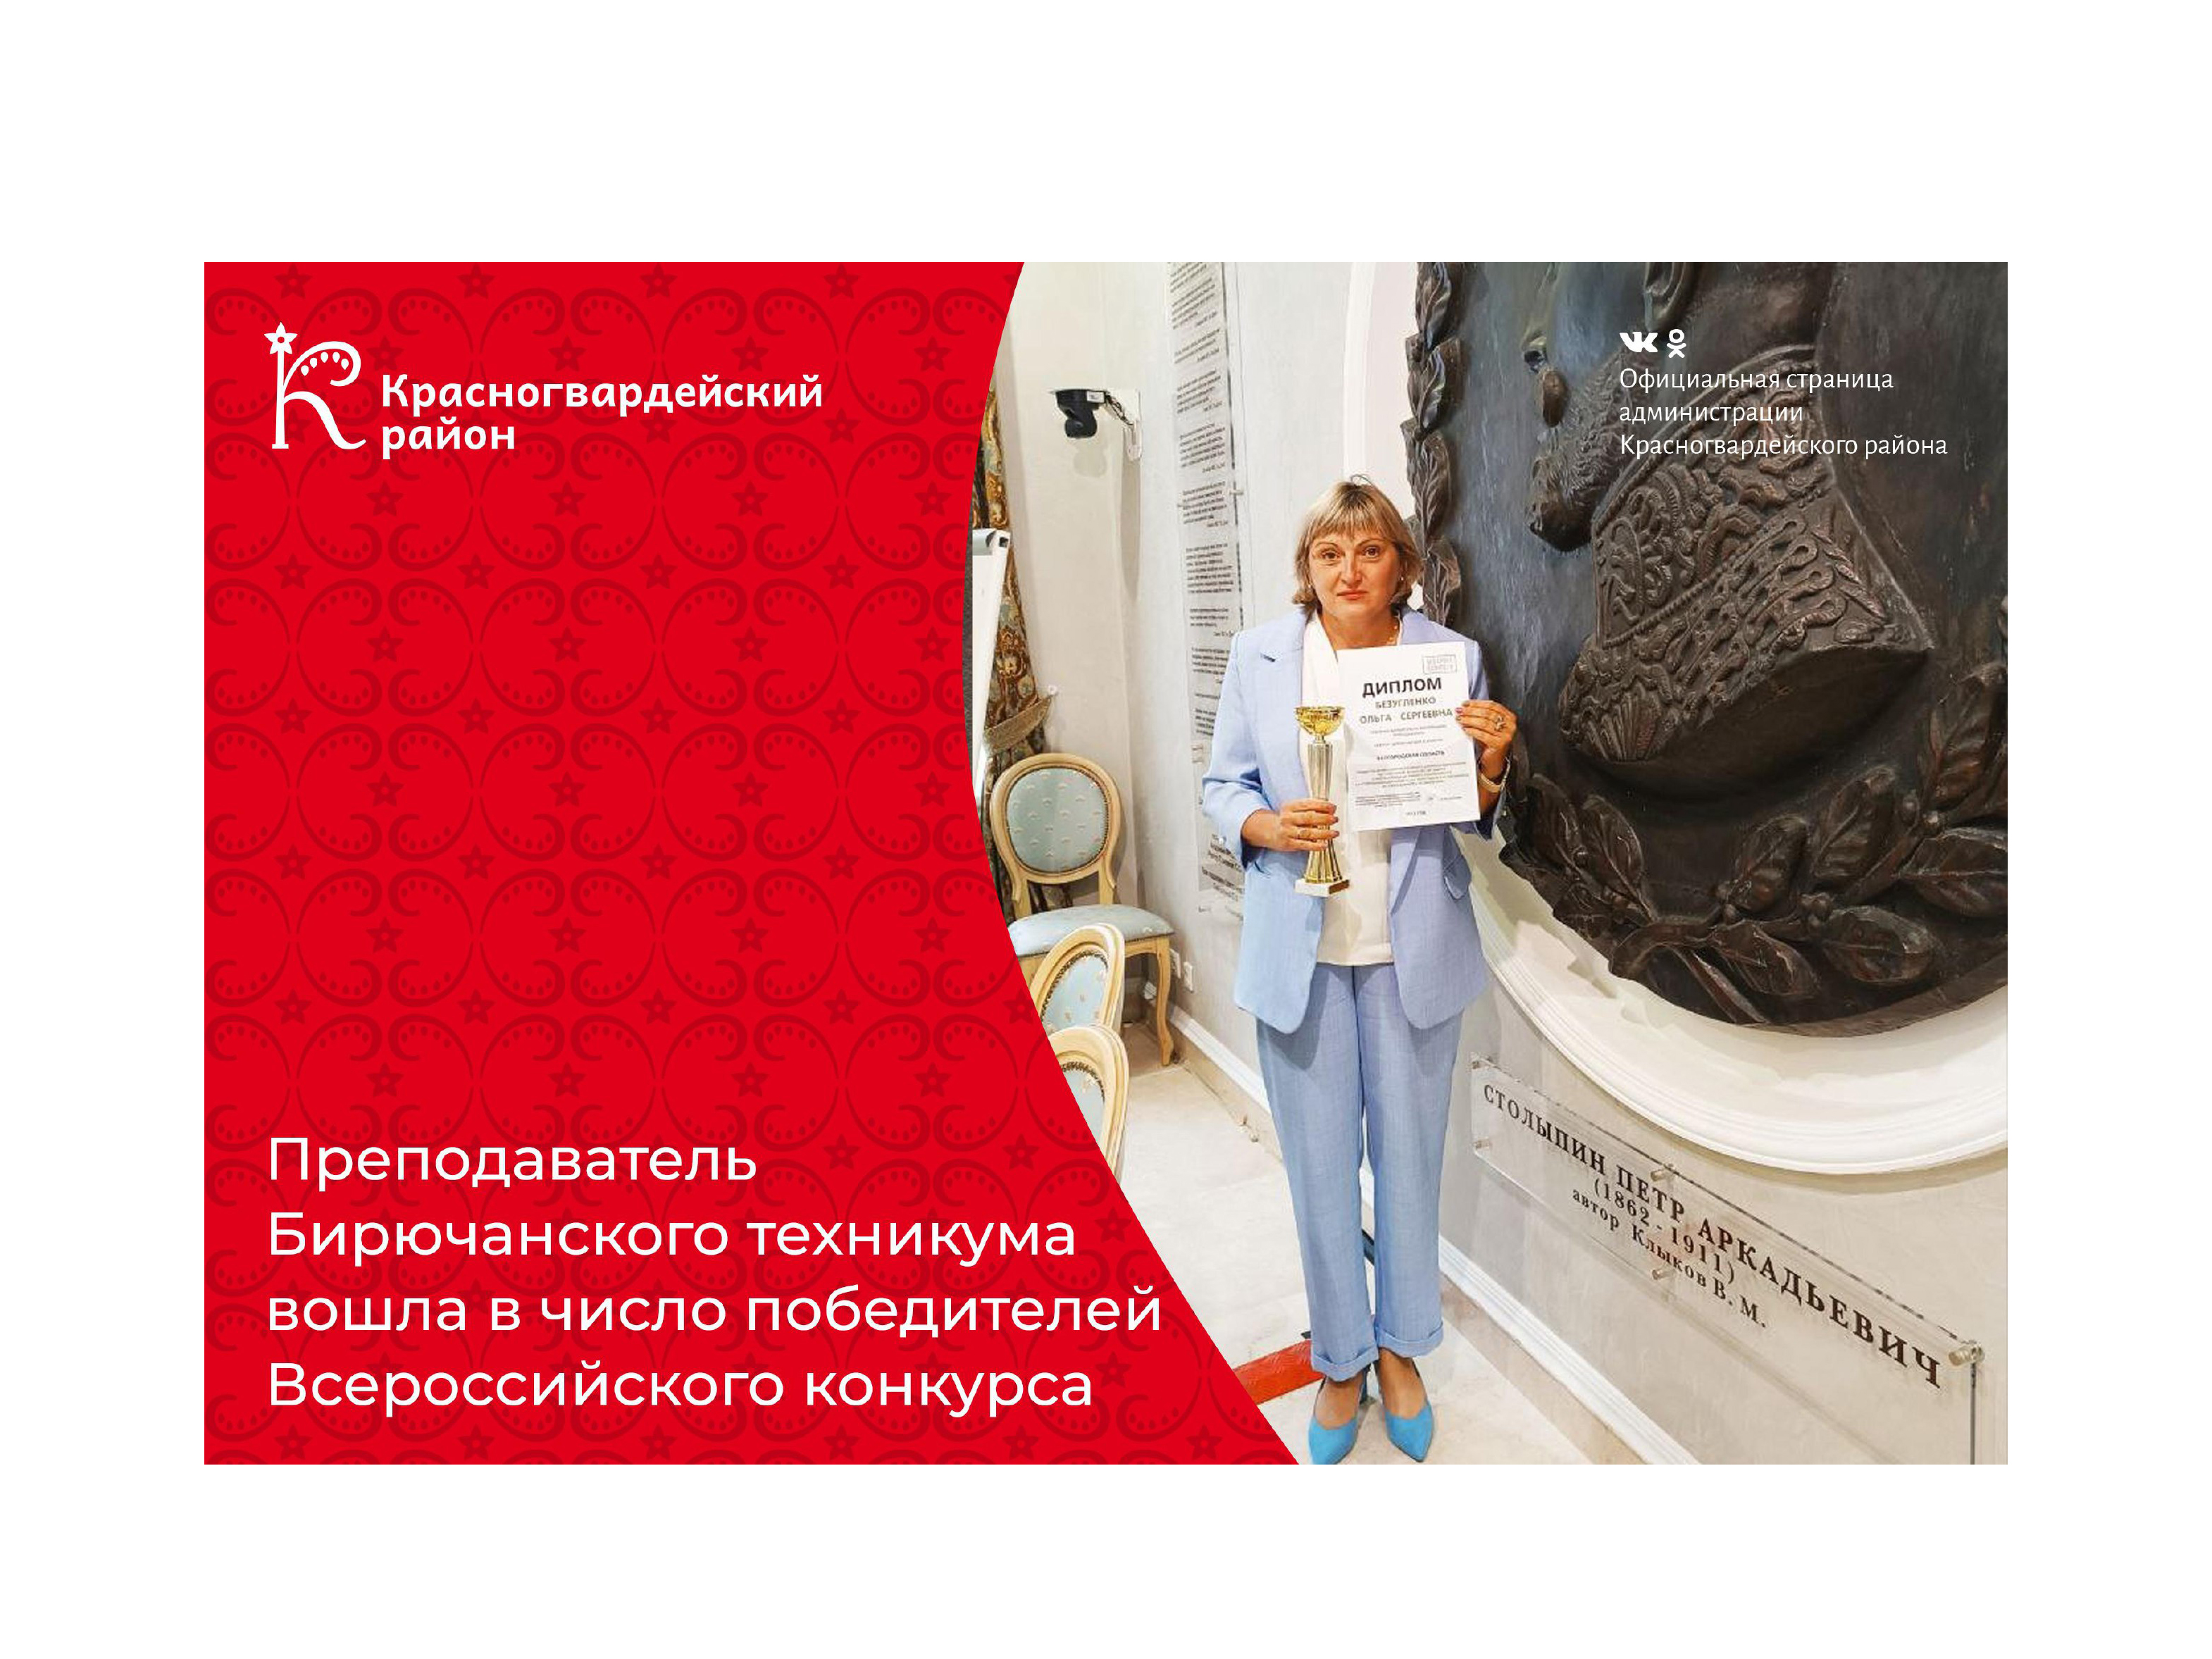 Преподаватель Бирючанского техникума Ольга Безугленко вошла в число победителей Всероссийского конкурса.